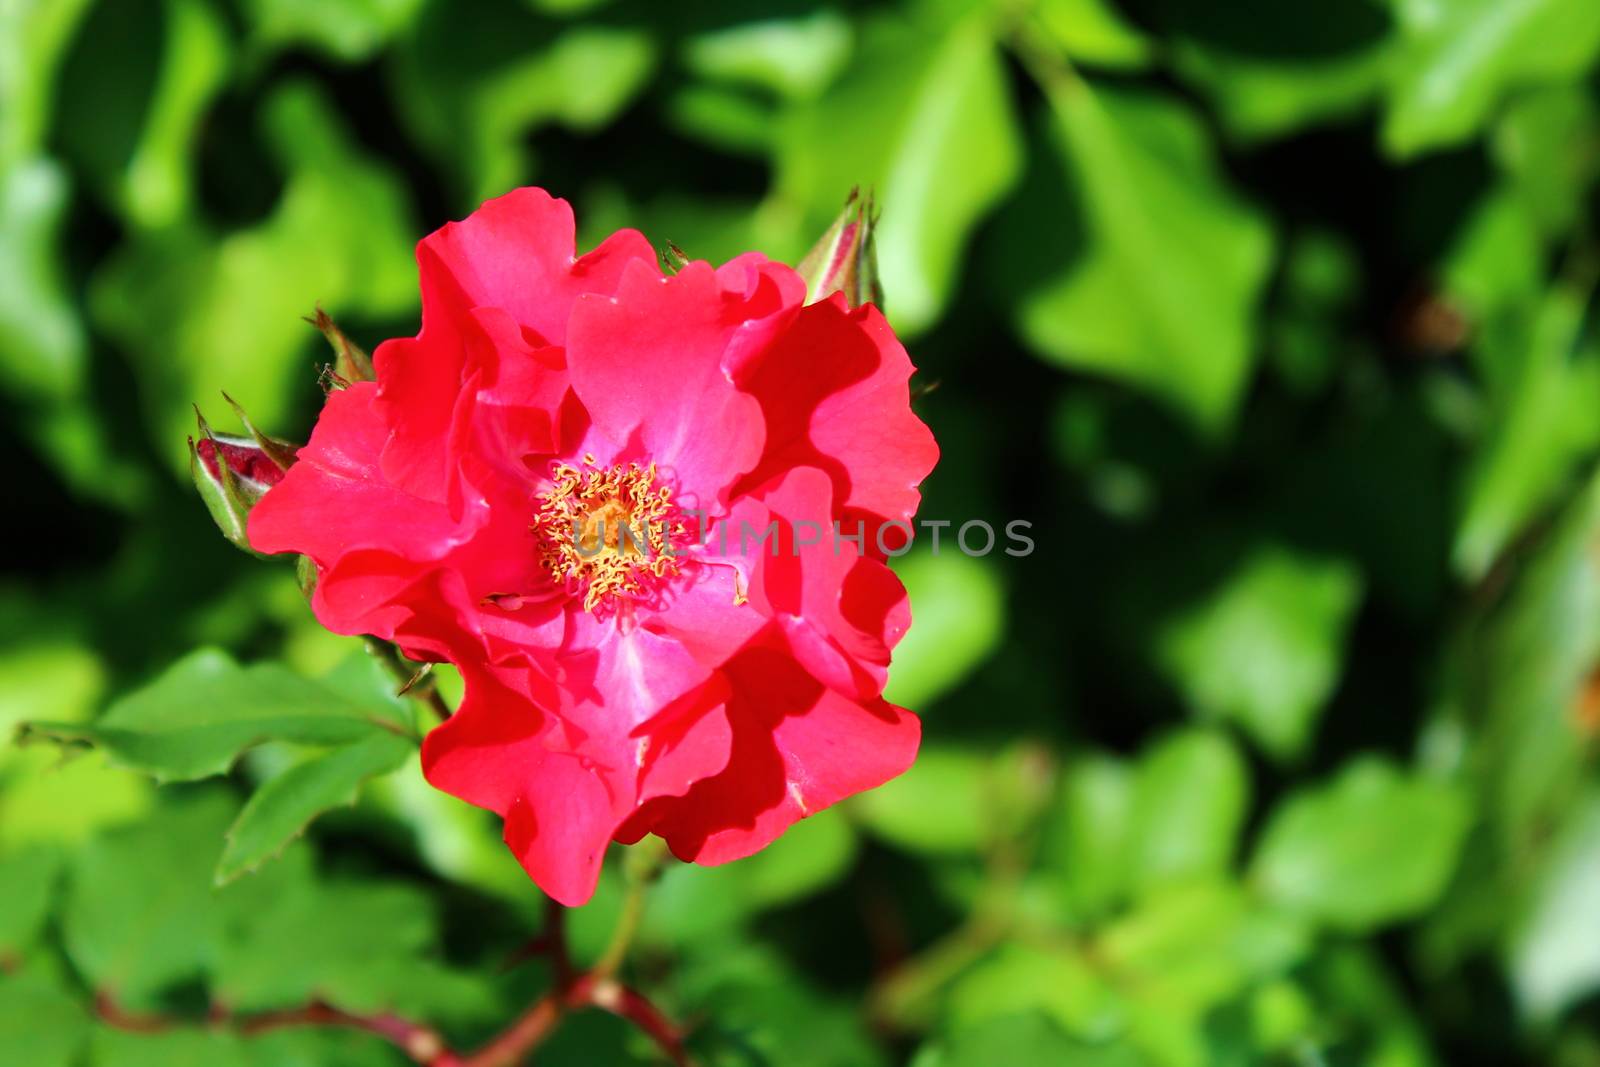 red rose in the garden in the summer by martina_unbehauen